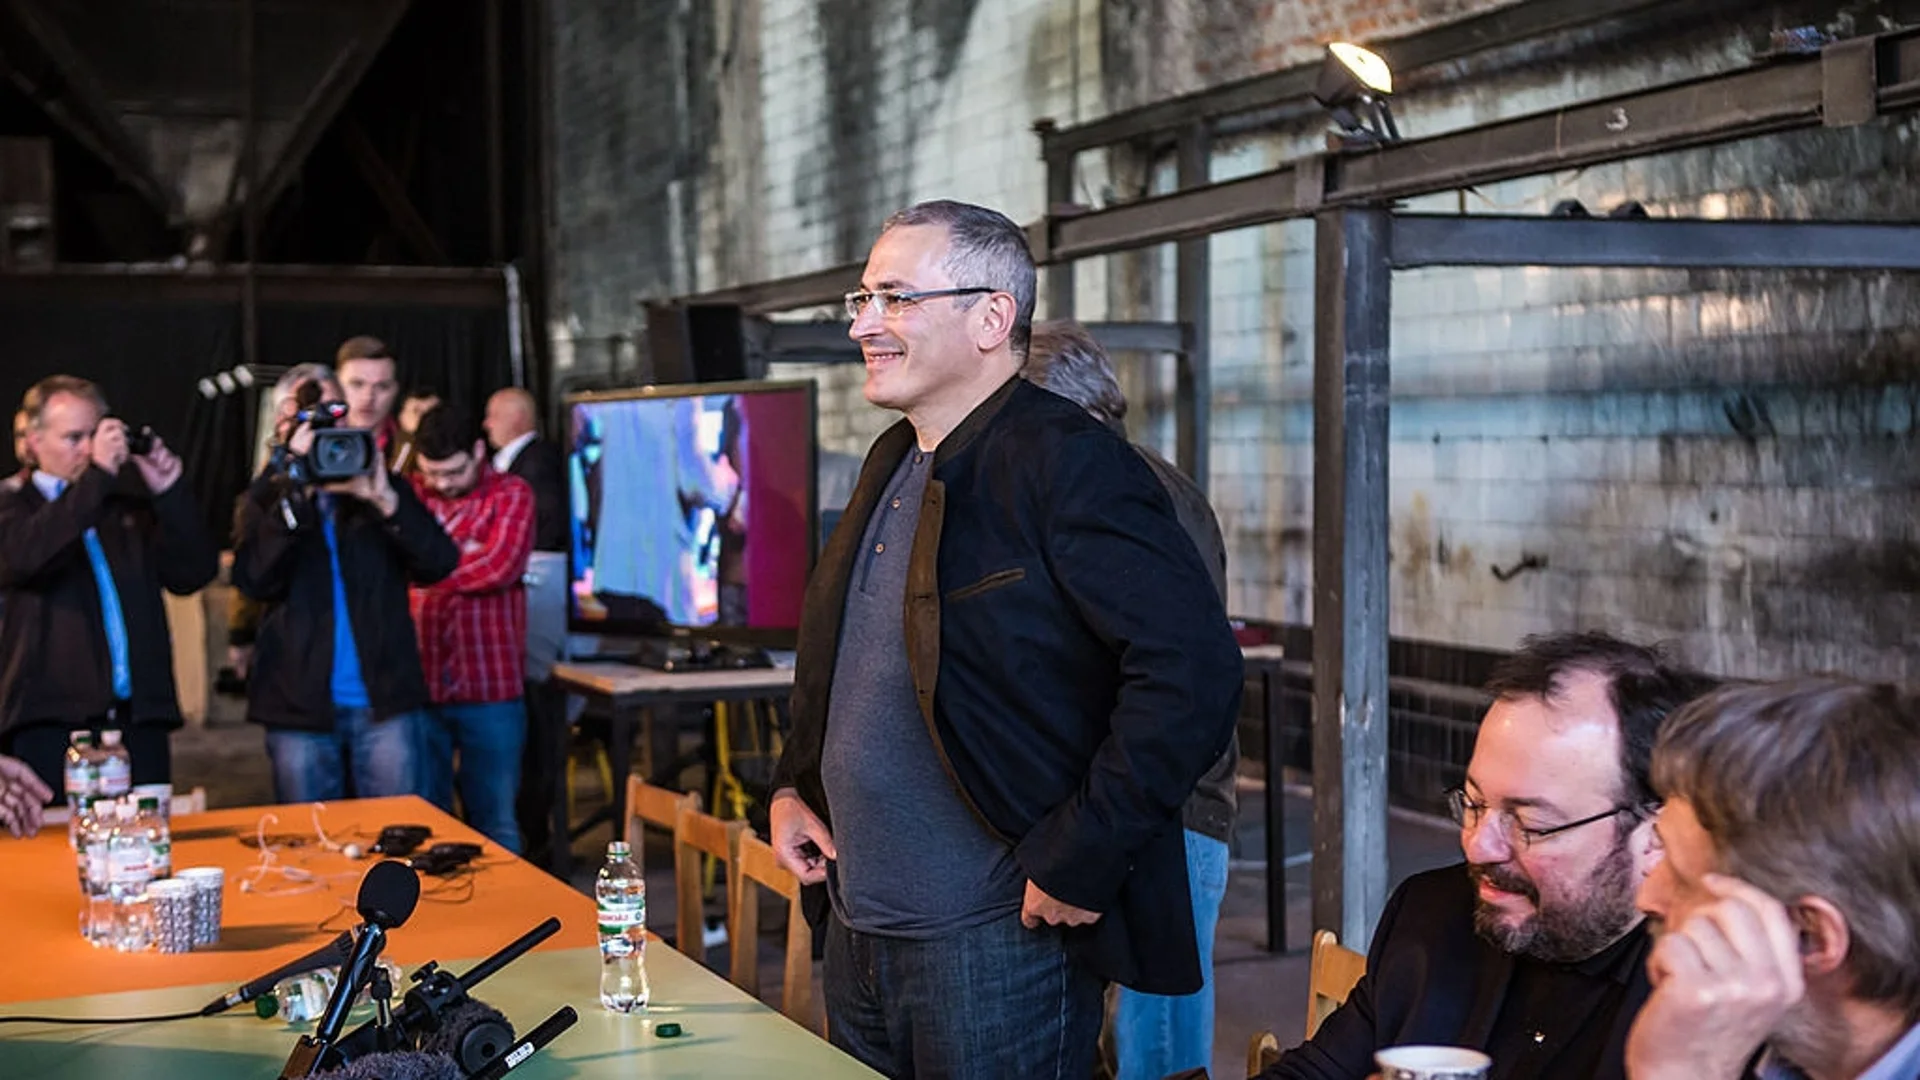 Ходорковски: Режимът на Путин ще се смени чрез революция